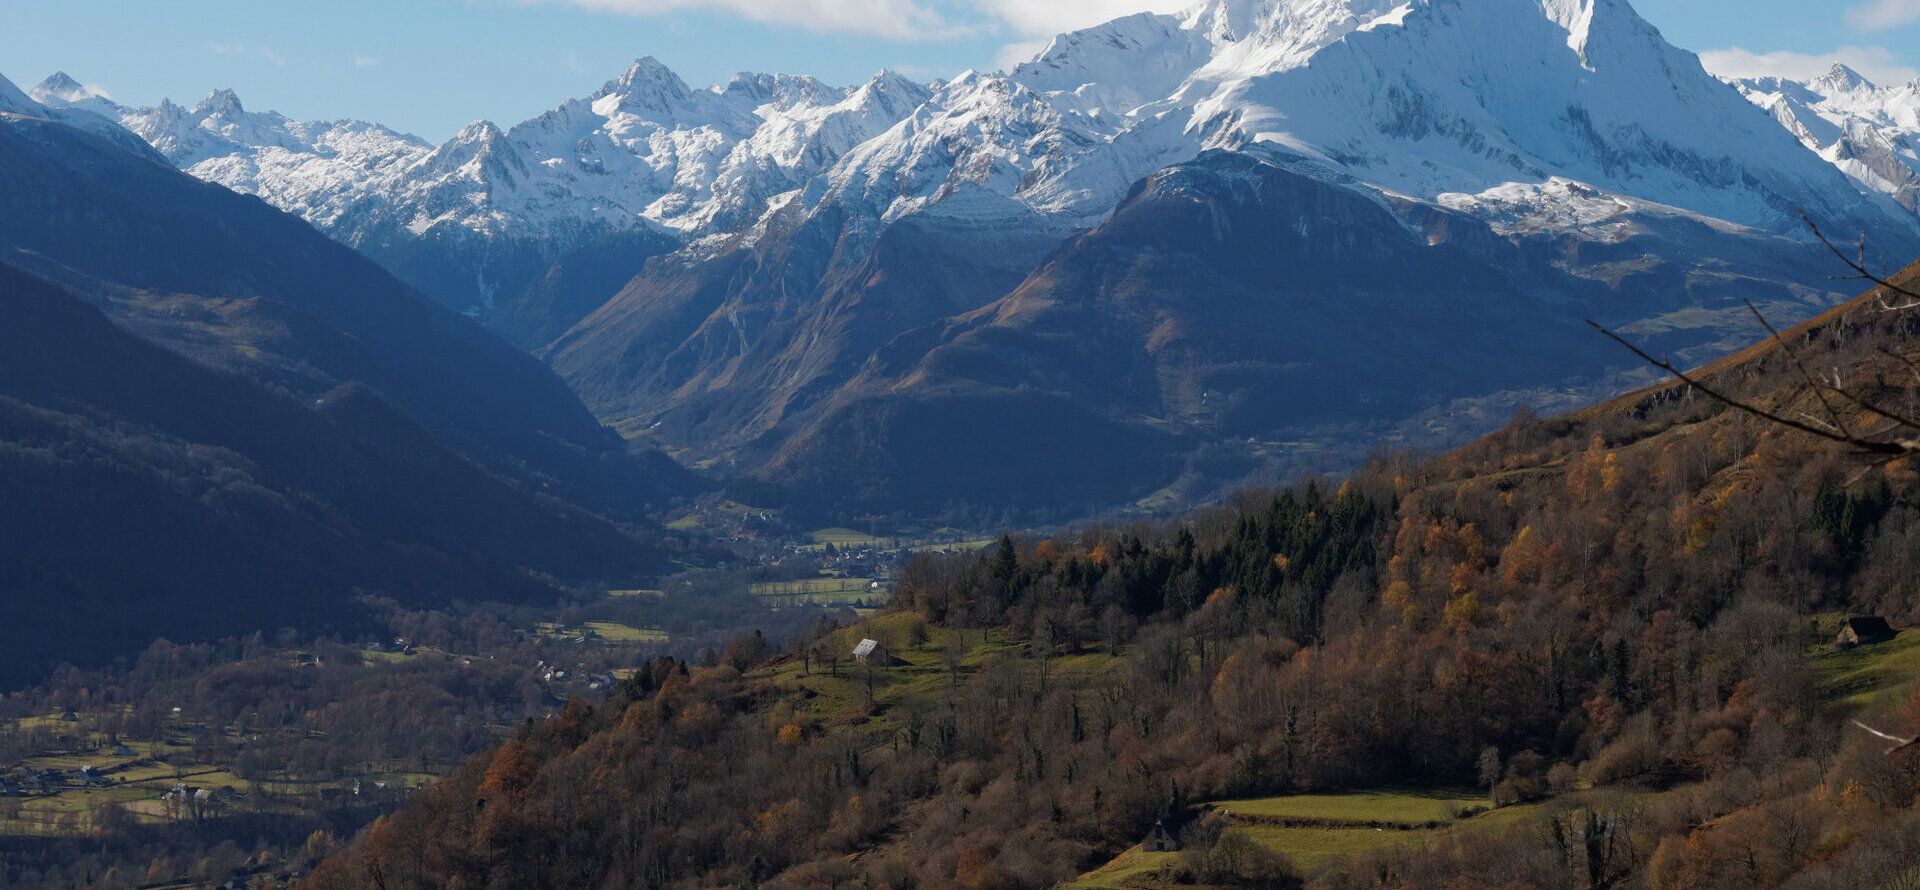 Arrens-Marsous est un village de montagne qui se trouve dans le département des Hautes-Pyrénées